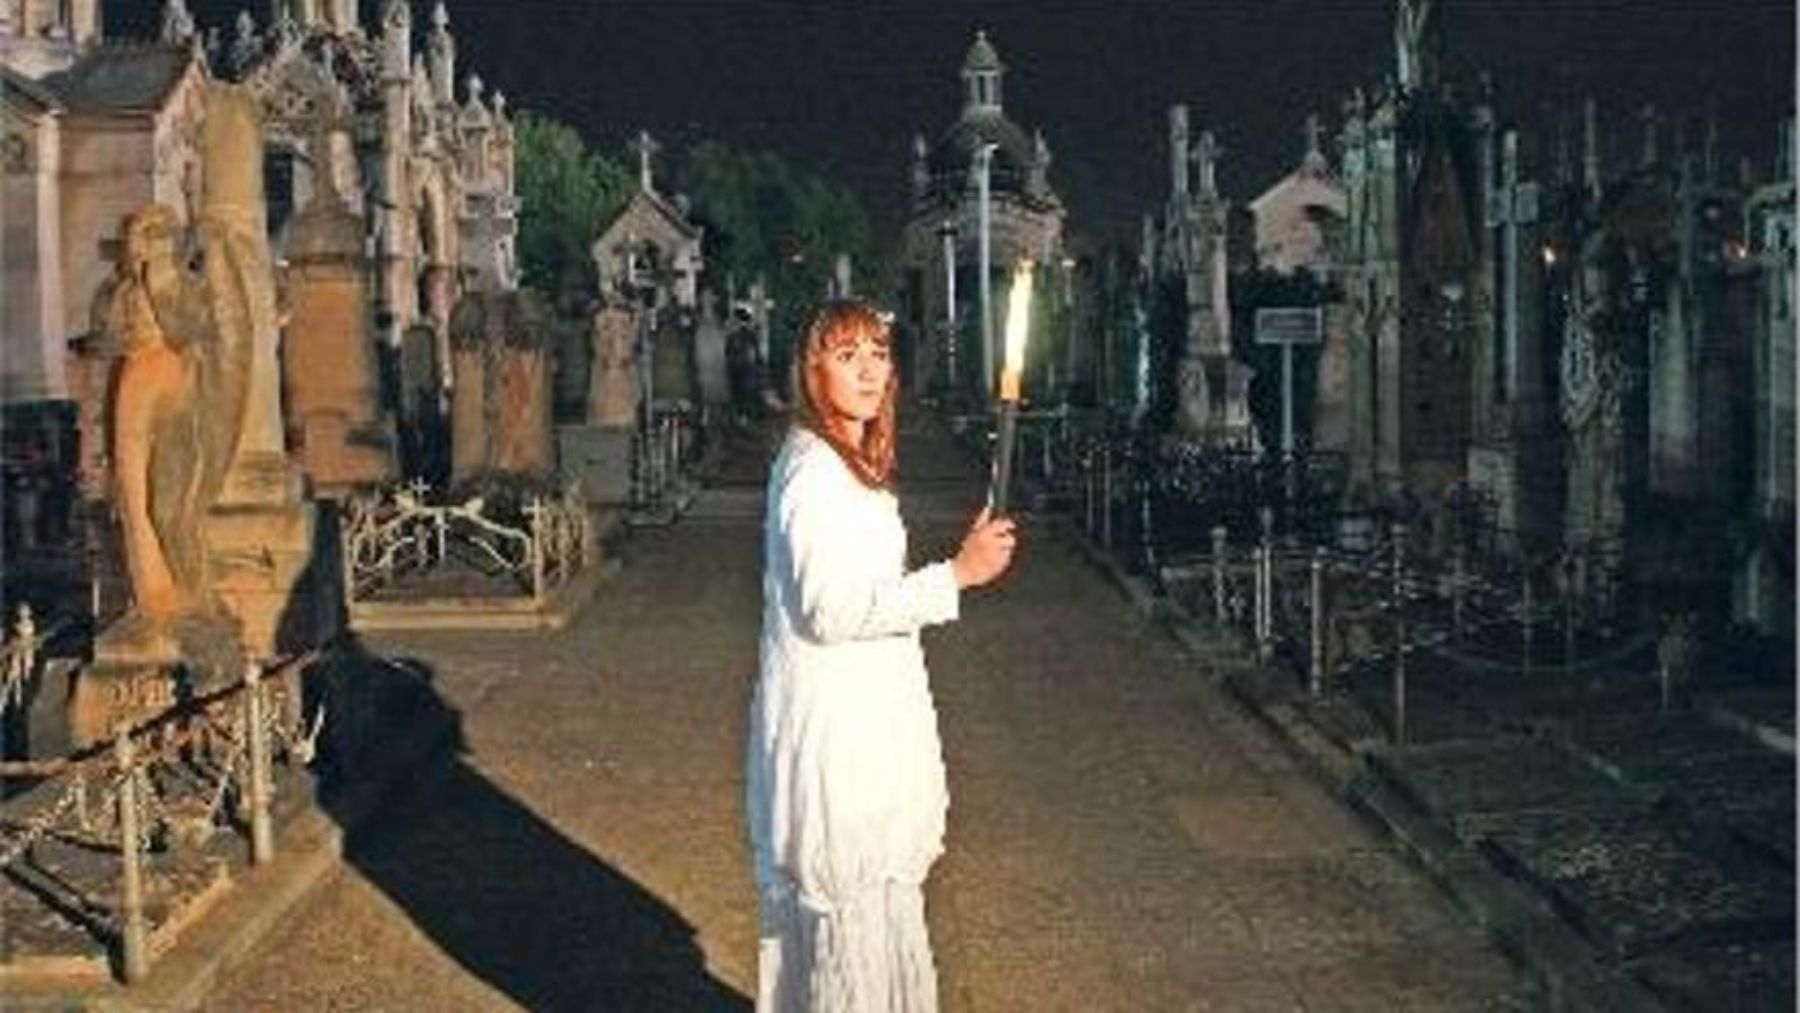 Visita nocturna guiada al cementerio de Palma.